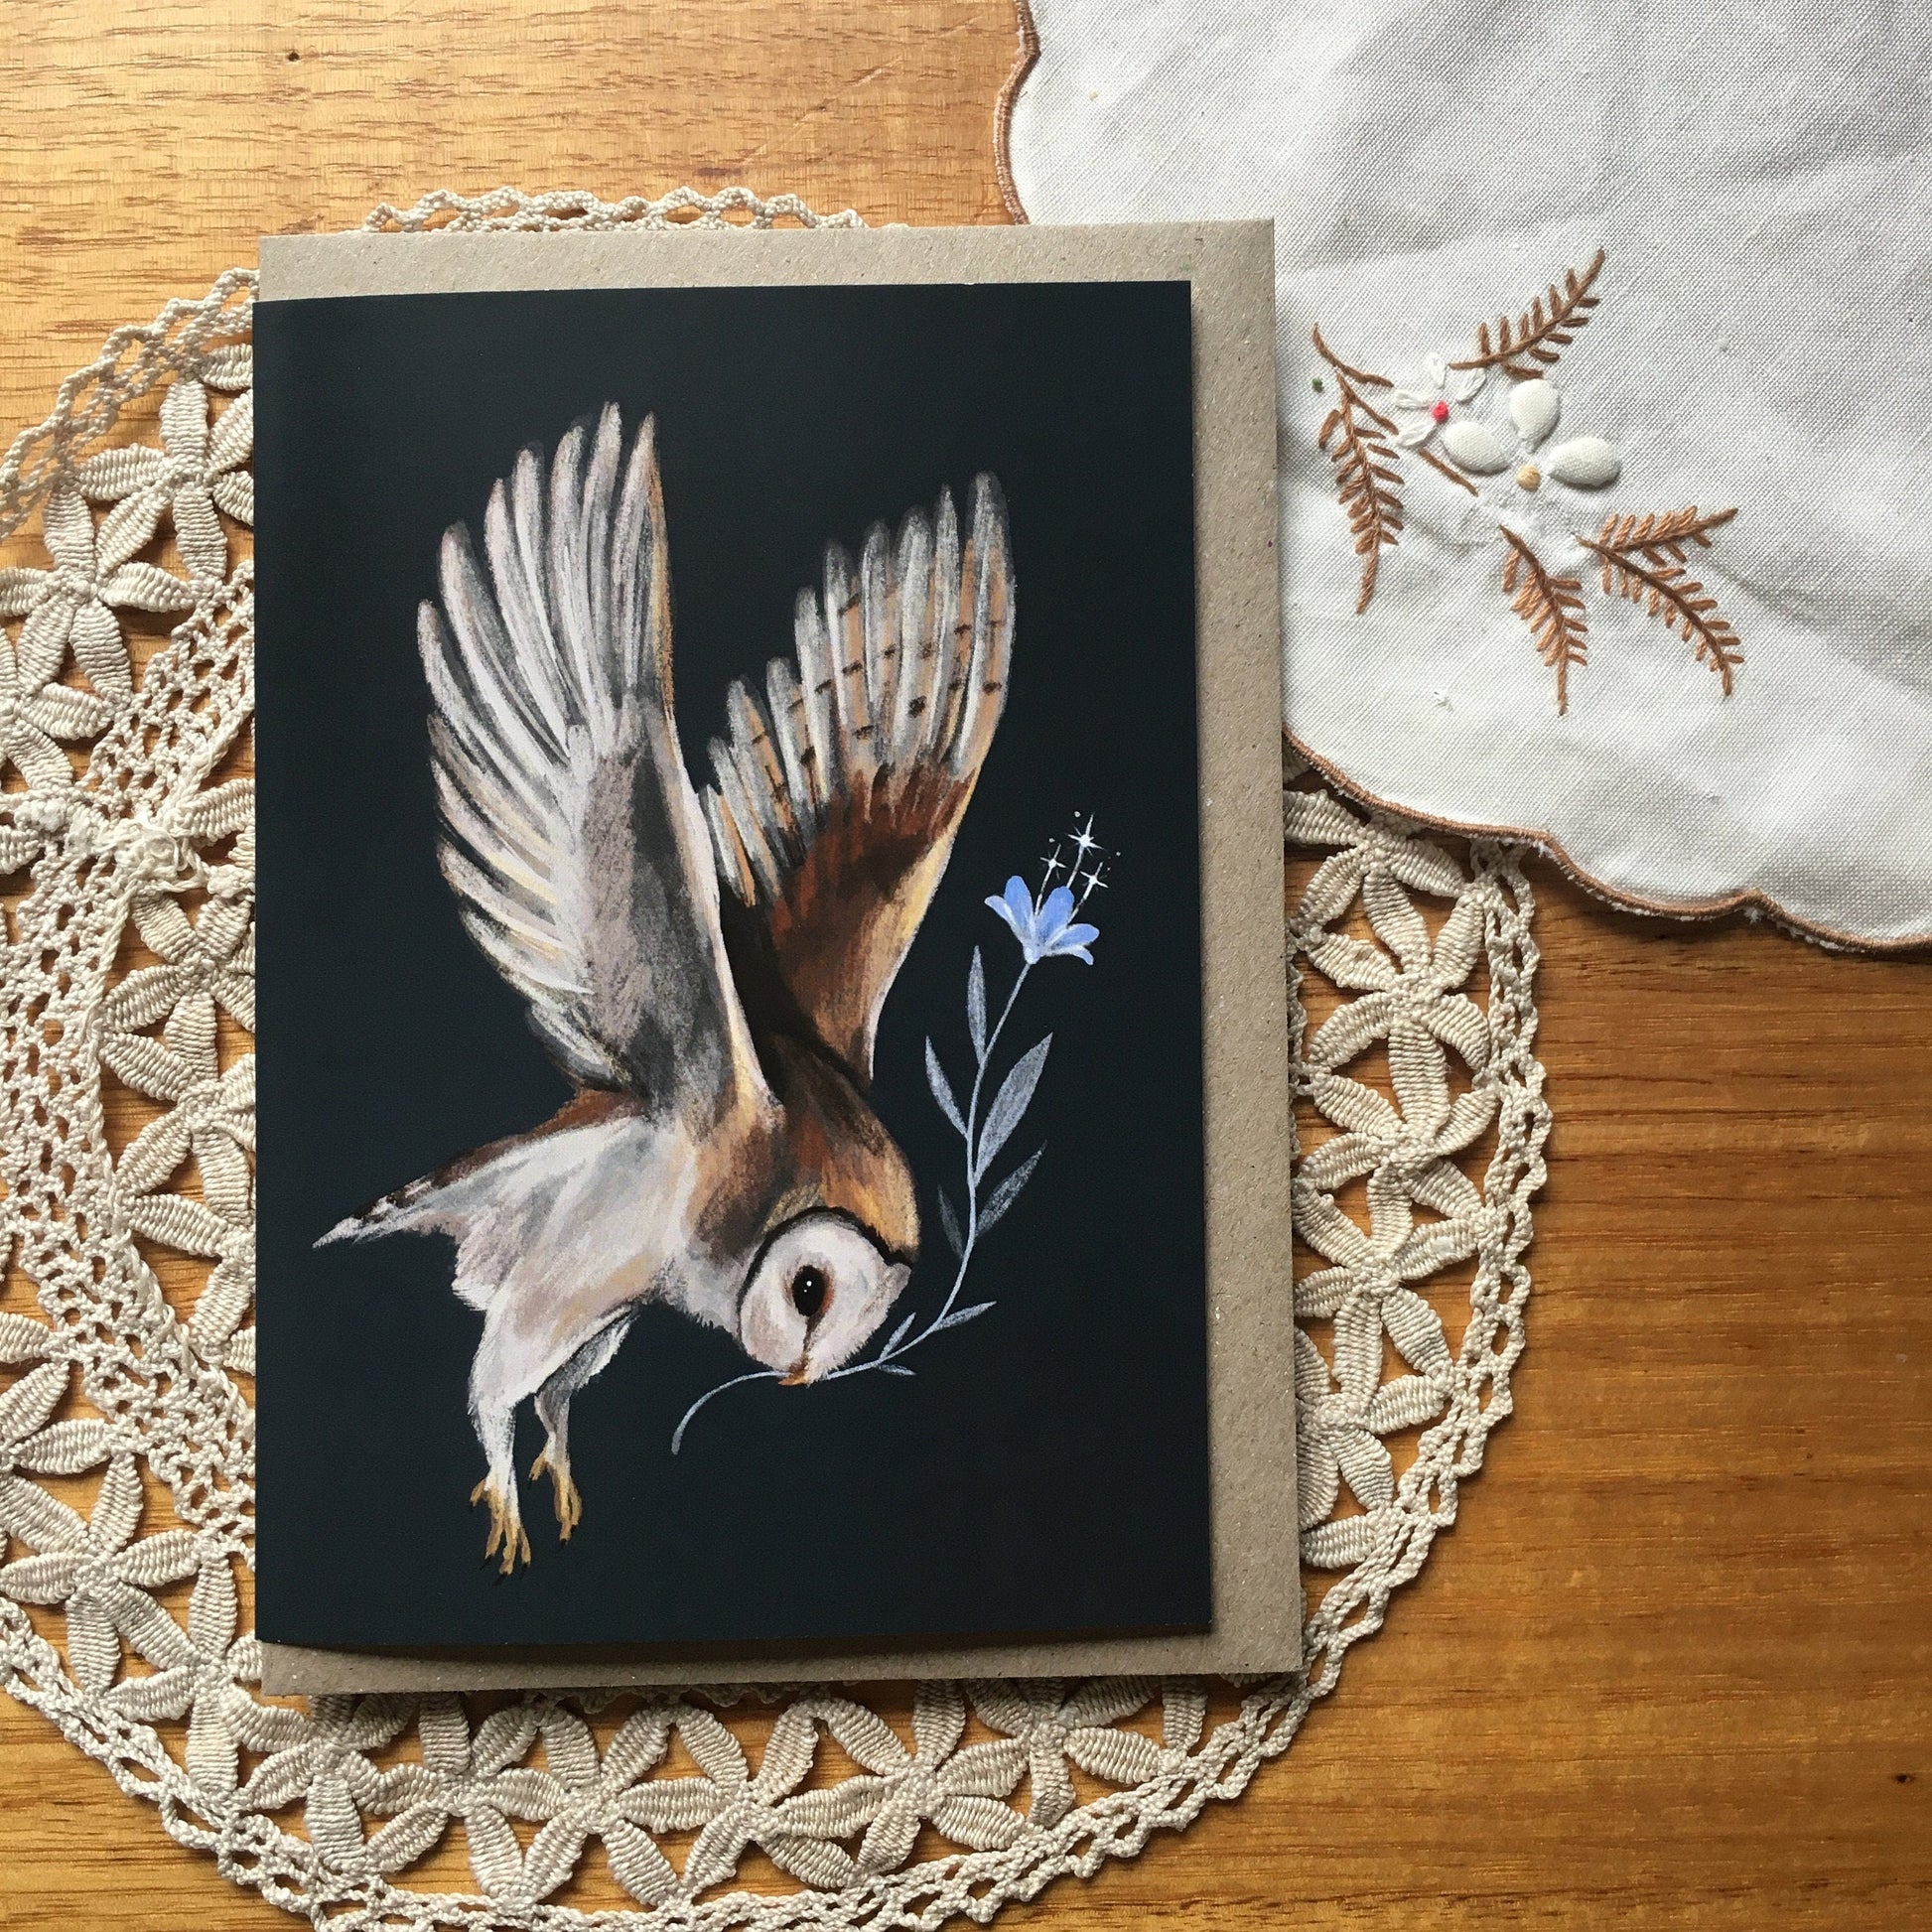 Anna Seed Art | Greeting Card - Barn Owl in Flight. Fantasy illustration